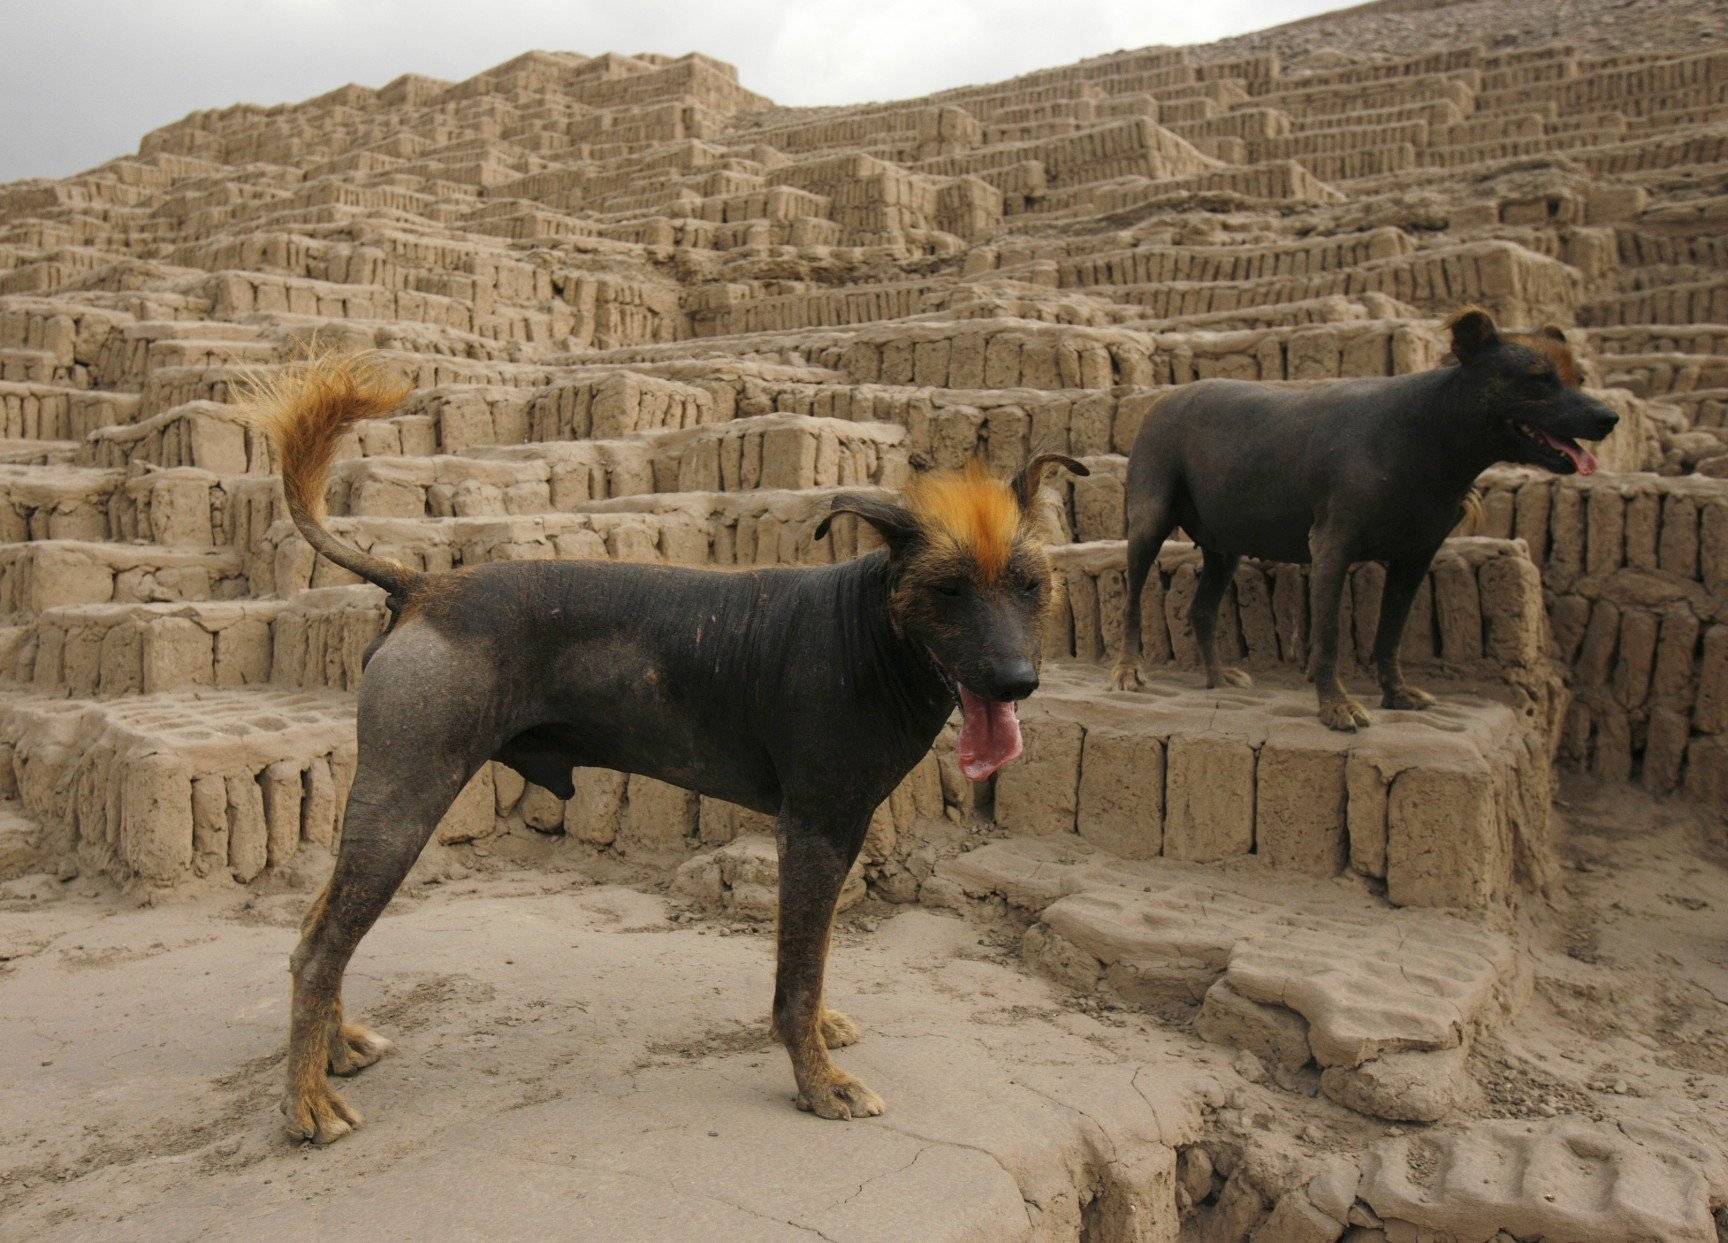 Самые древние породы собак в мире: топ-10